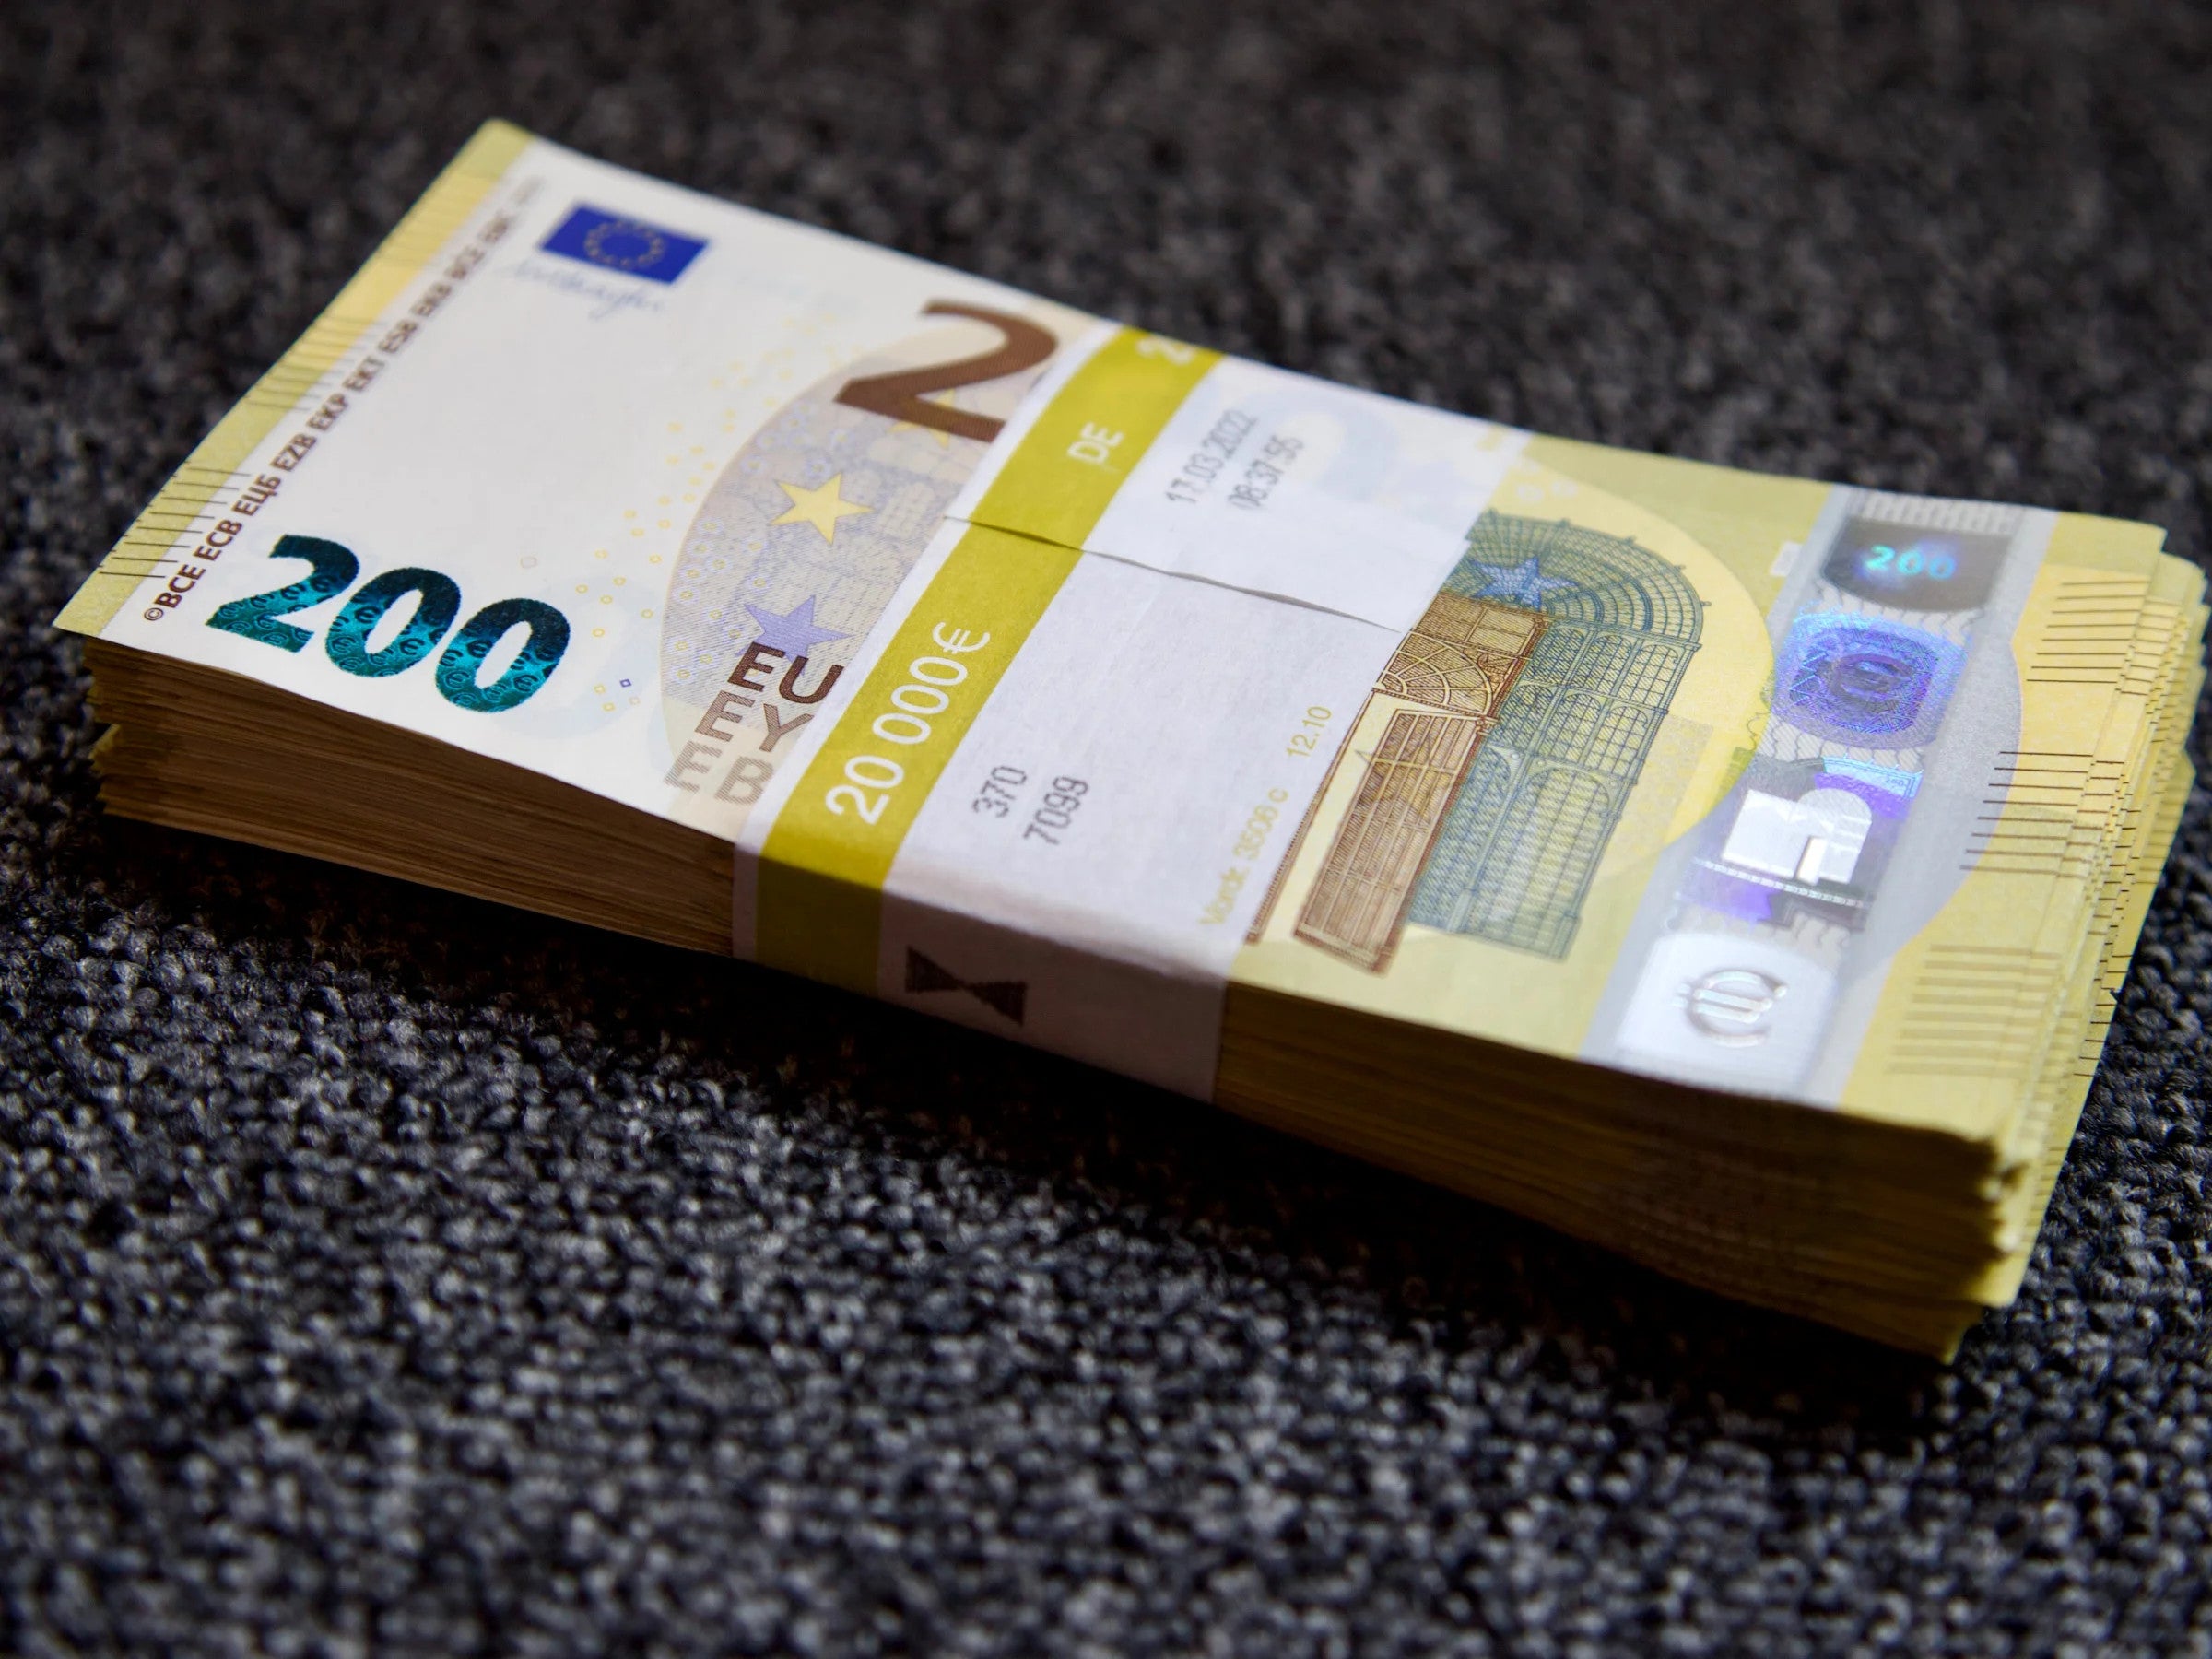 #Es geht los: Fast eine Million Deutsche bekommen jetzt 200 Euro geschenkt